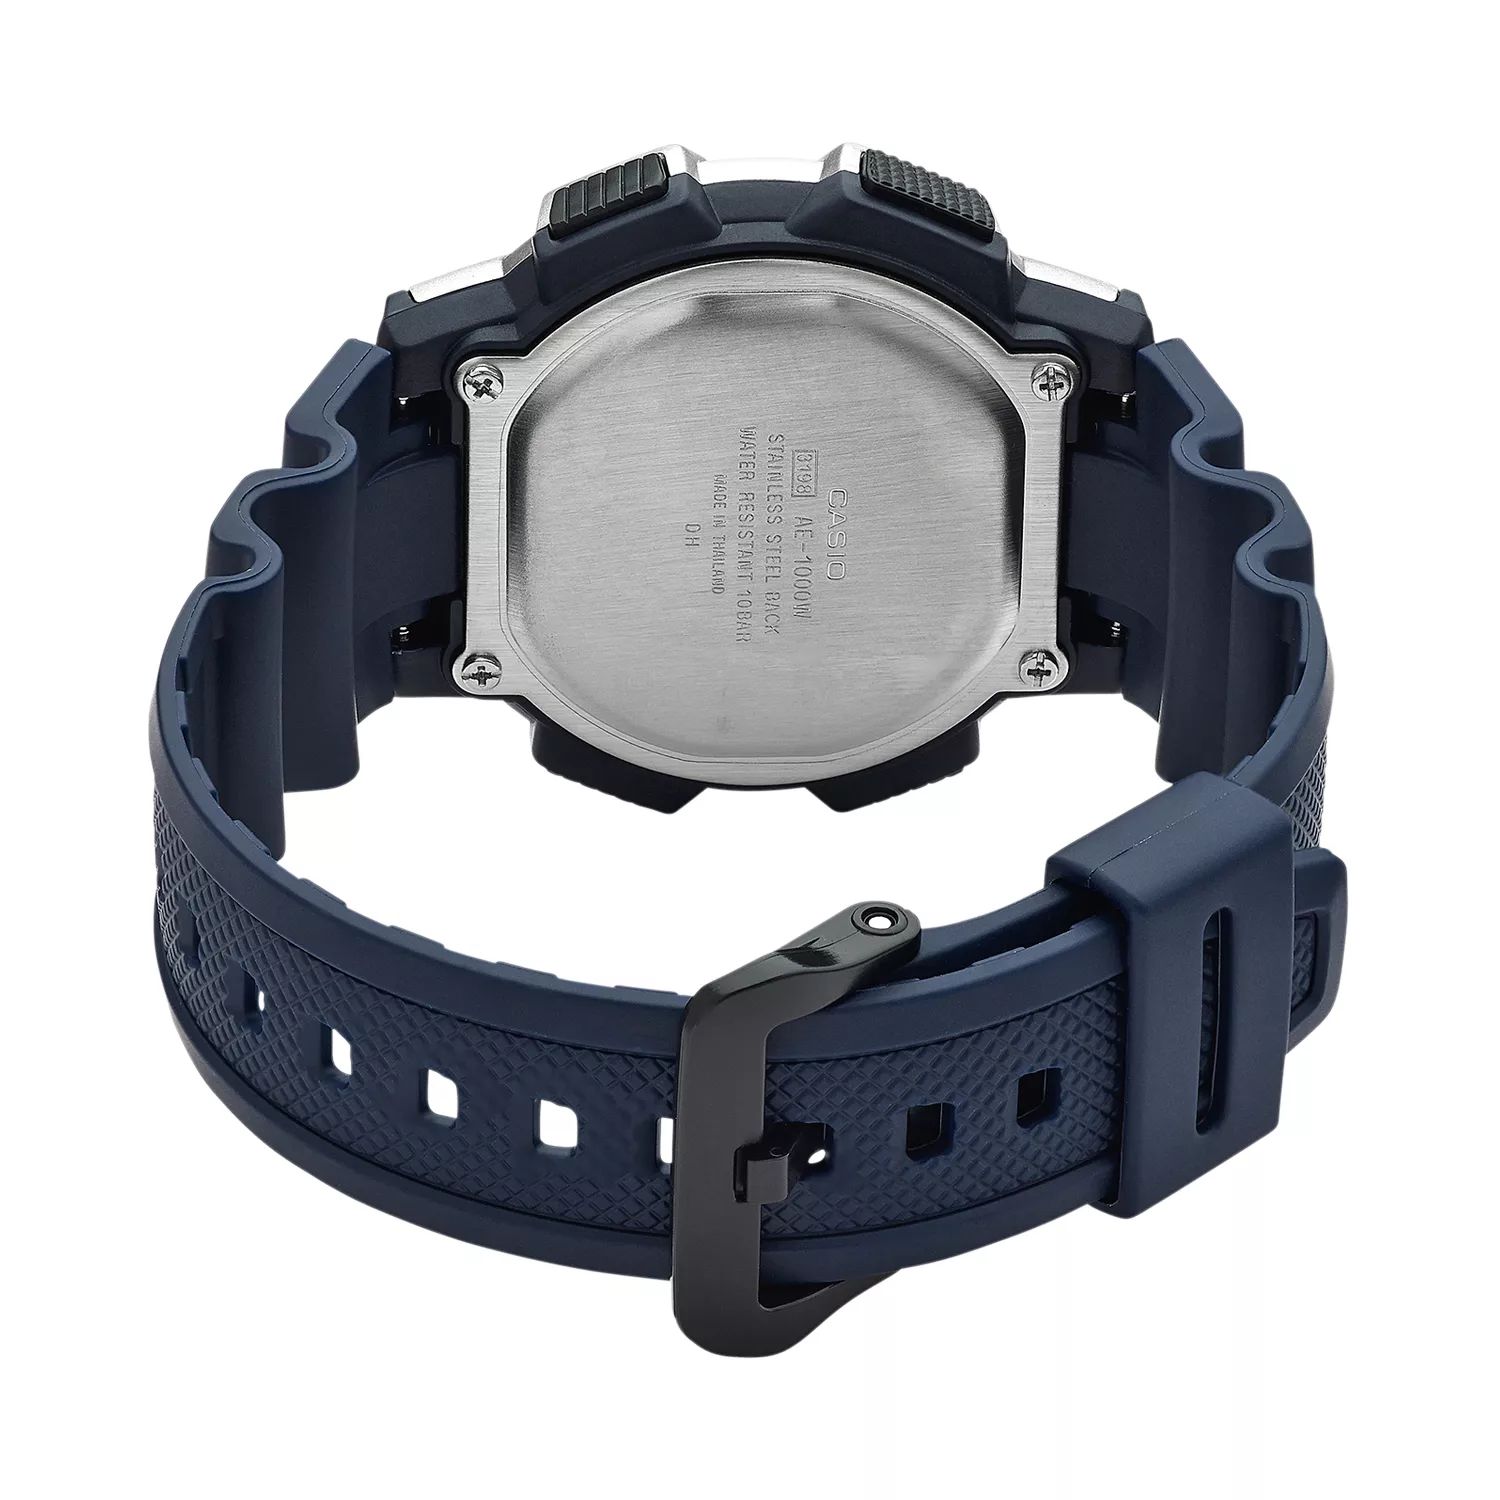 Мужские часы с цифровым хронографом и мировым временем - AE1000W-2AVCF Casio цена и фото